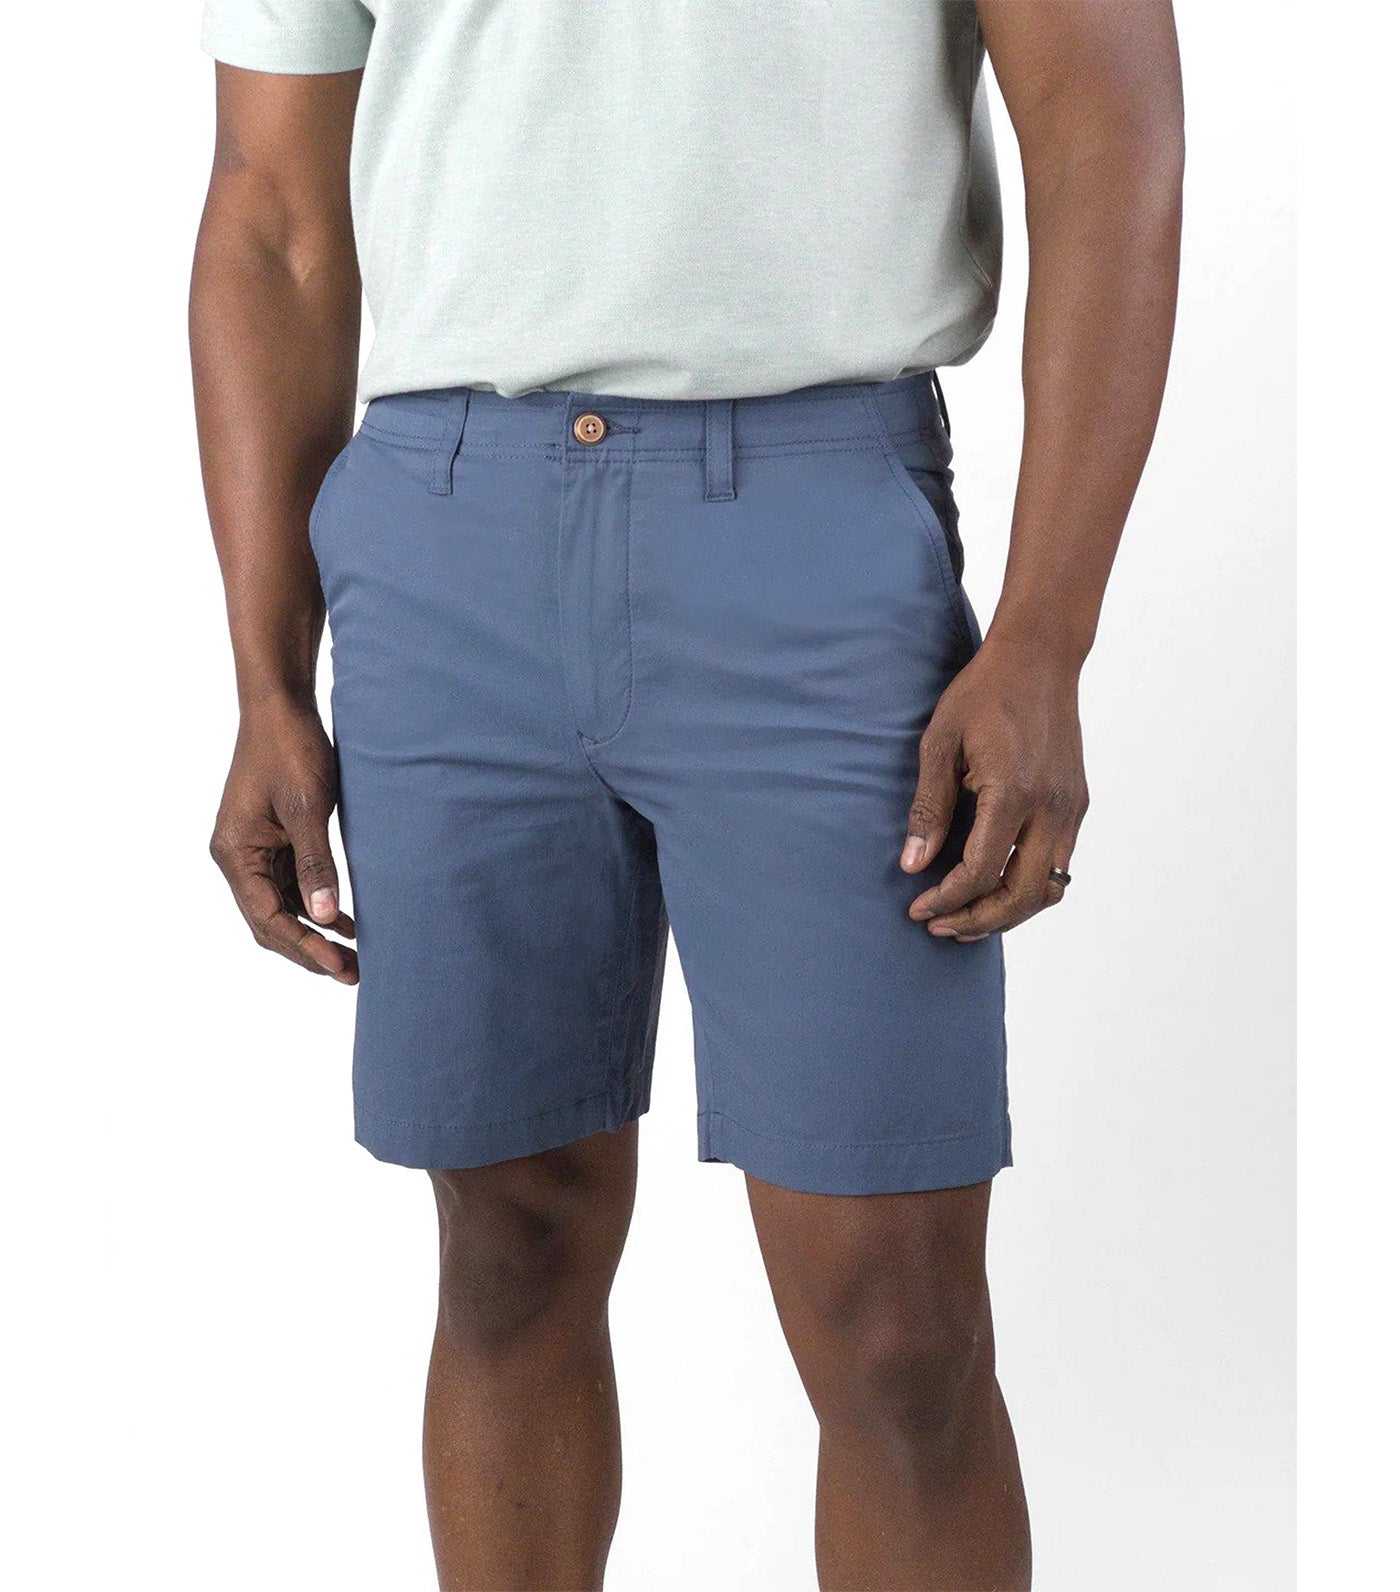 PUREtec cool™ Stretch Linen Cotton E-Waist 7 Inseam Shorts – Tailor Vintage